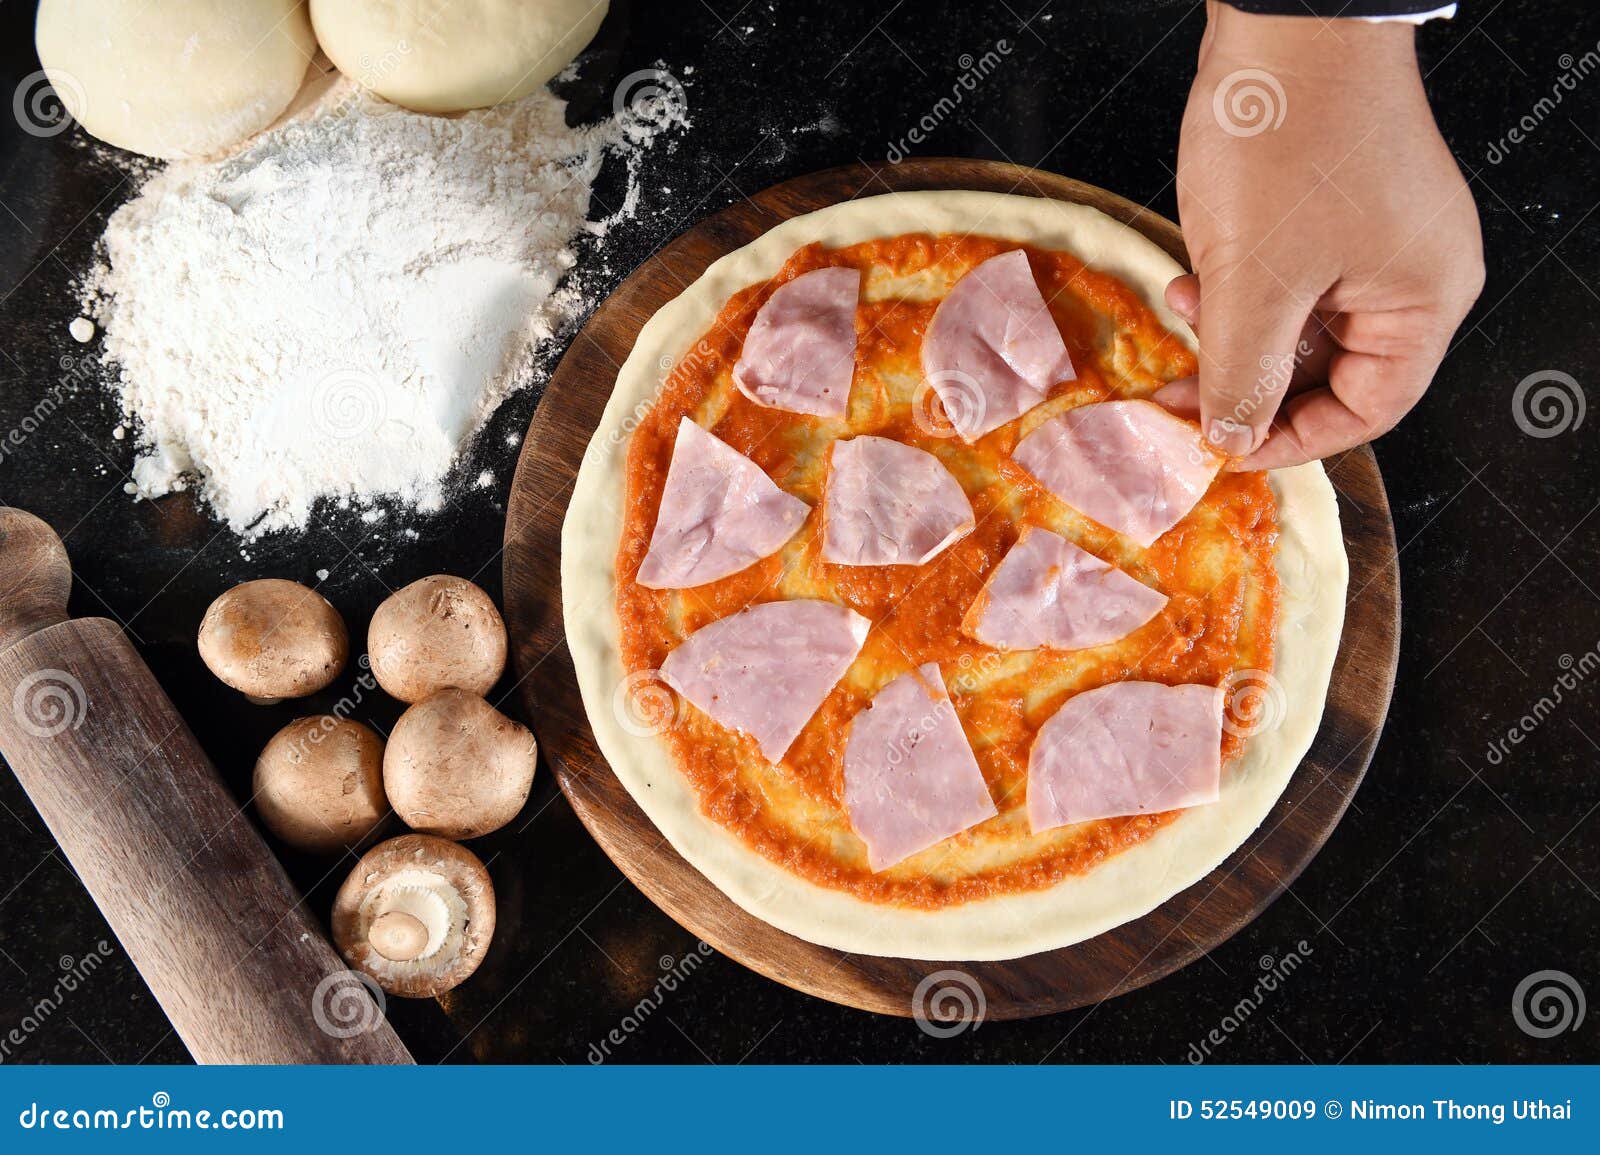 как кладут ингридиенты в пиццу фото 14